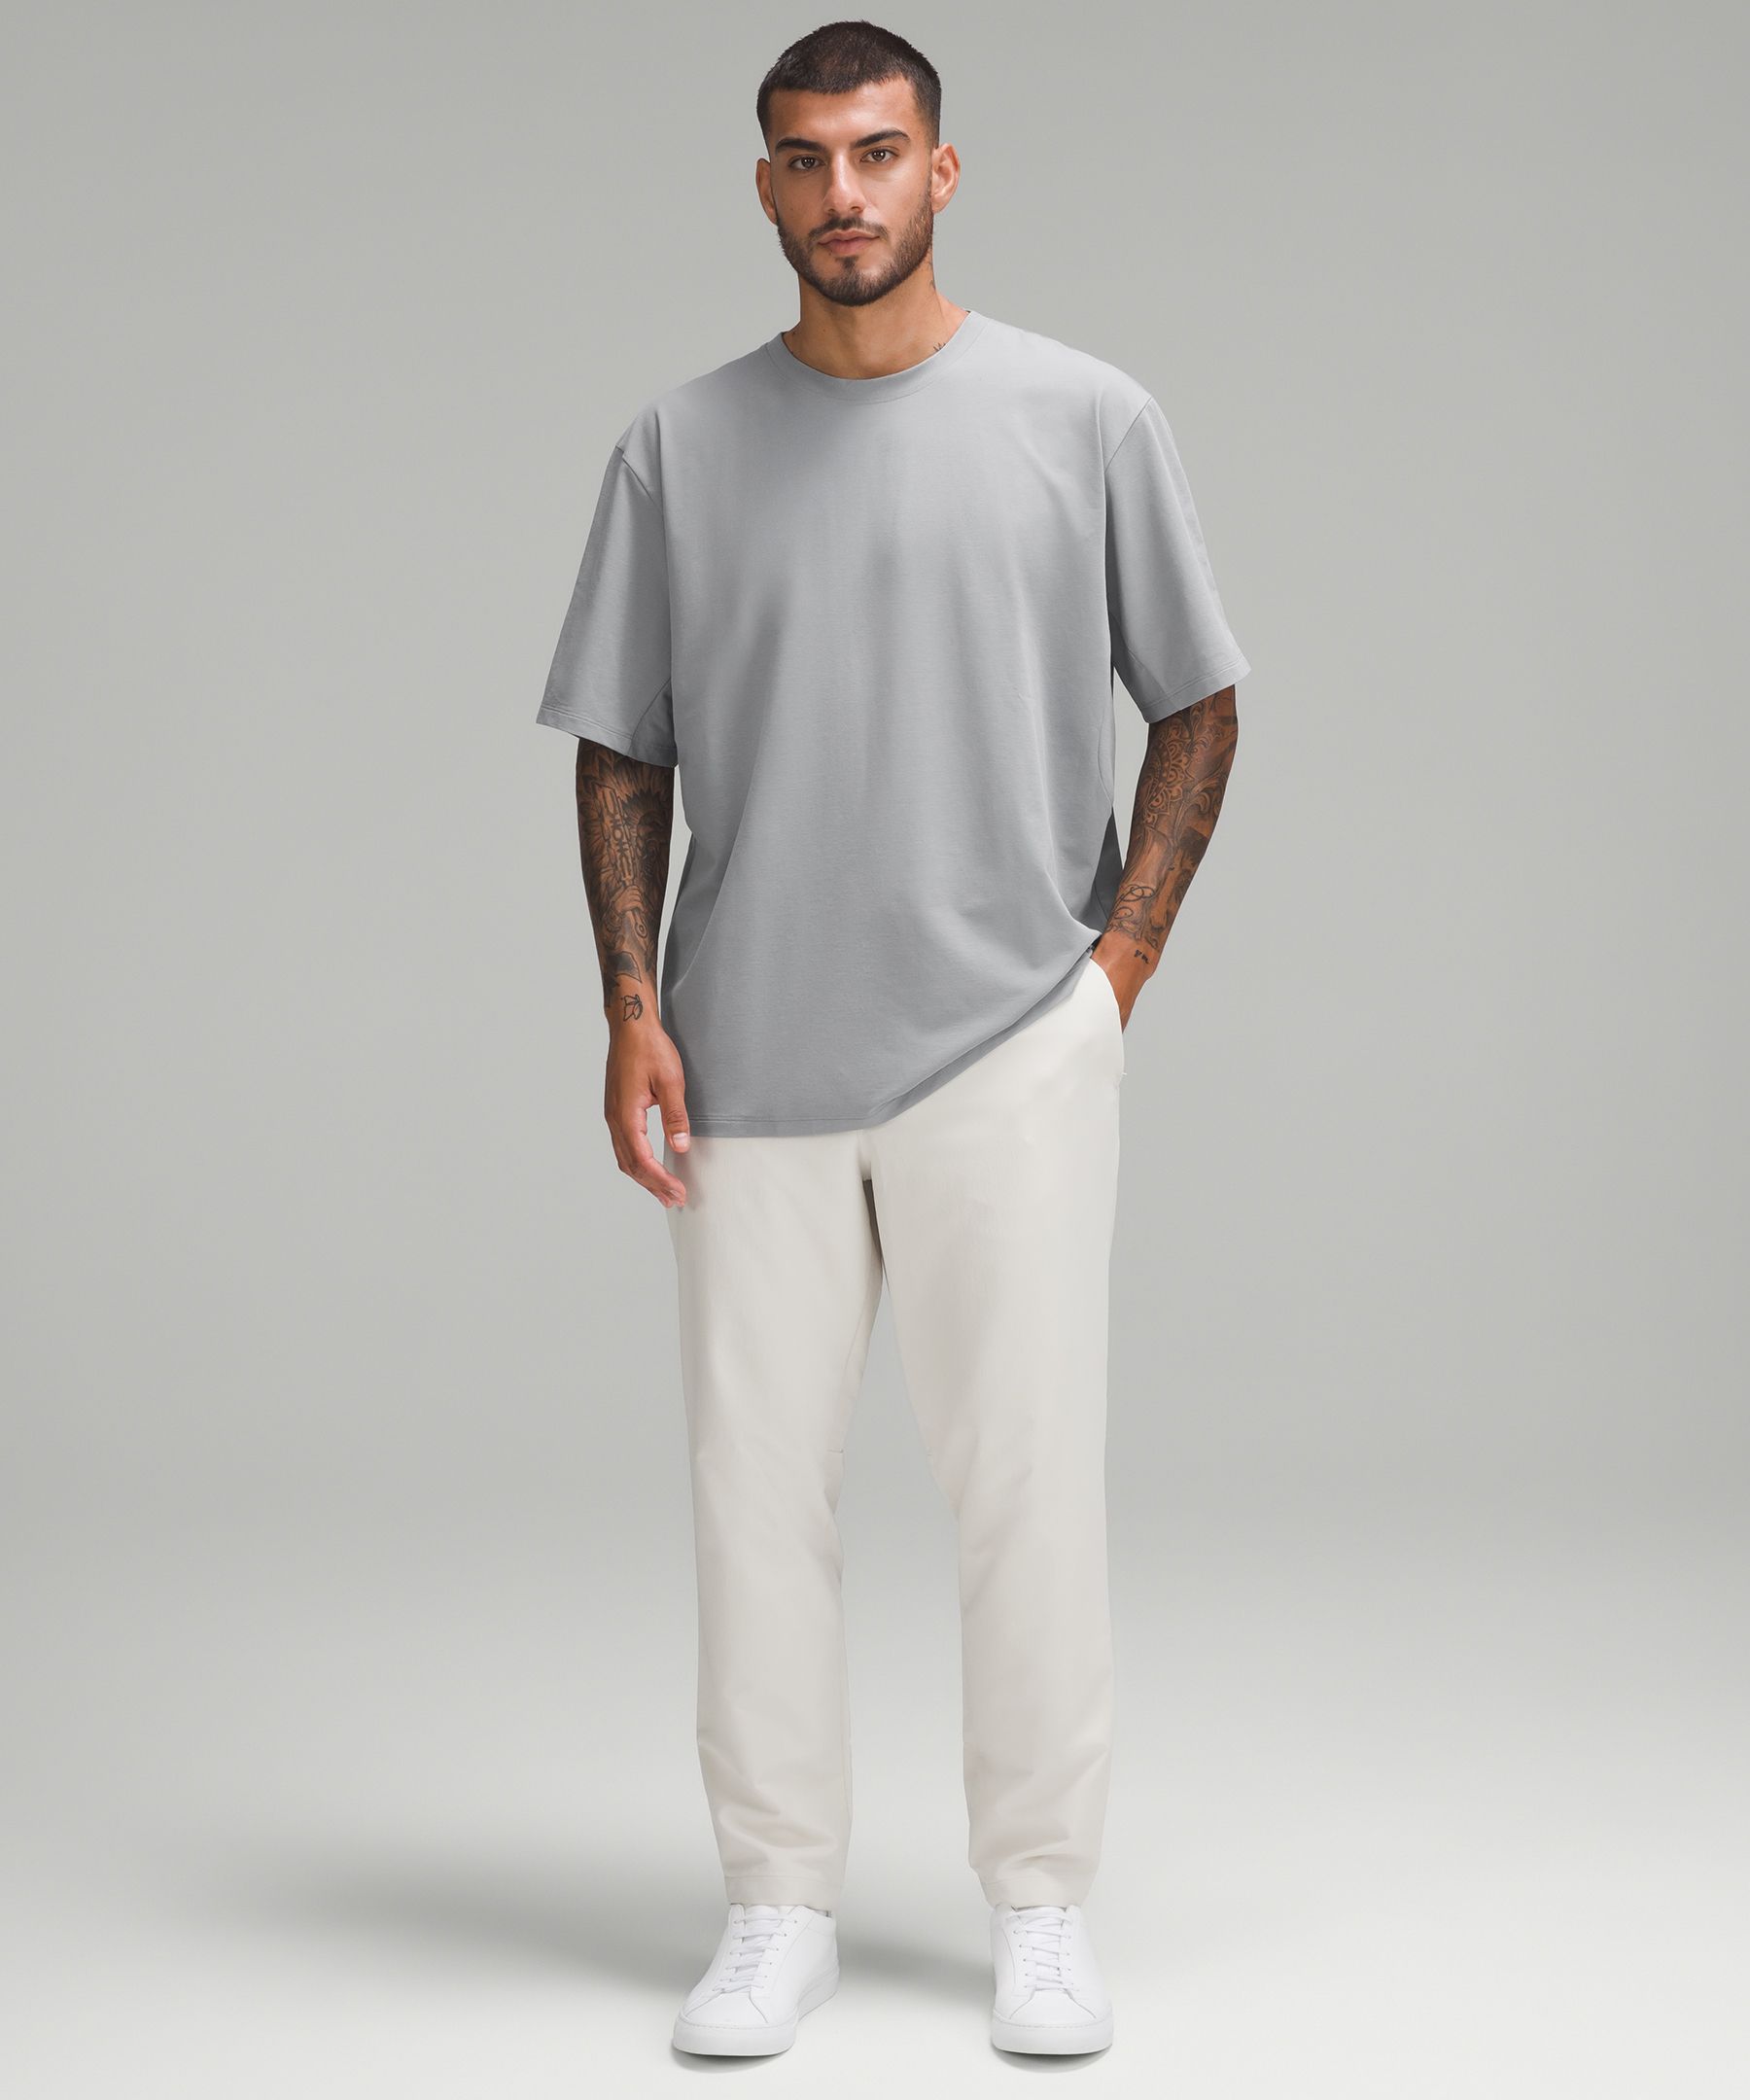 Lululemon Pique Oversized-Fit T-Shirt - Grey/White - Size Large Easy Care Fabric